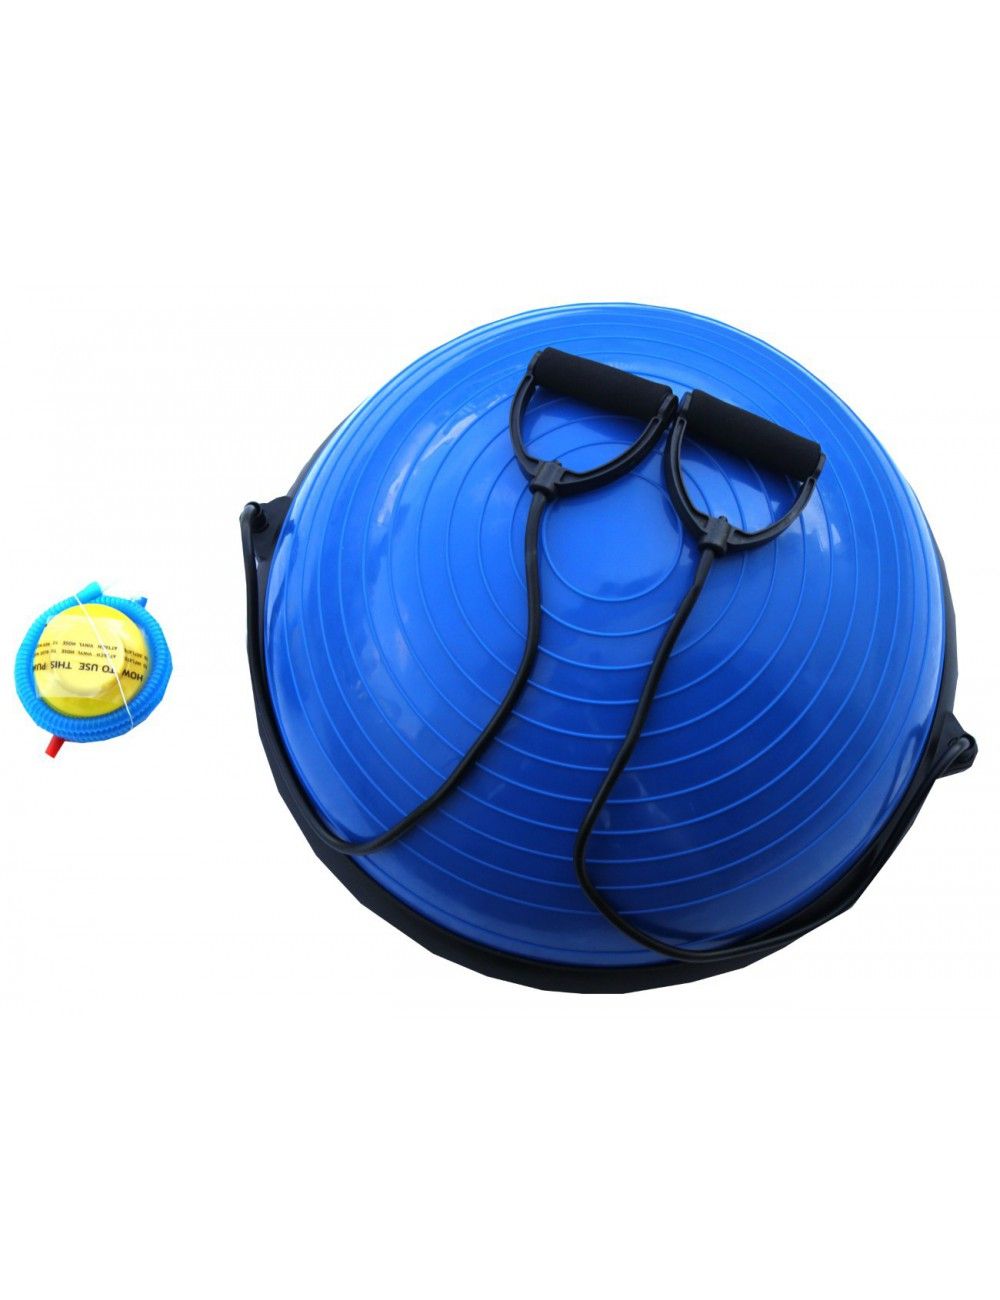 Lisaro Balance Ball/Balancierball | Balance Ball mit 2 Zugbändern beidseitig nutzbar Ideal für Yoga Gymnastik – mit Pumpe - 1